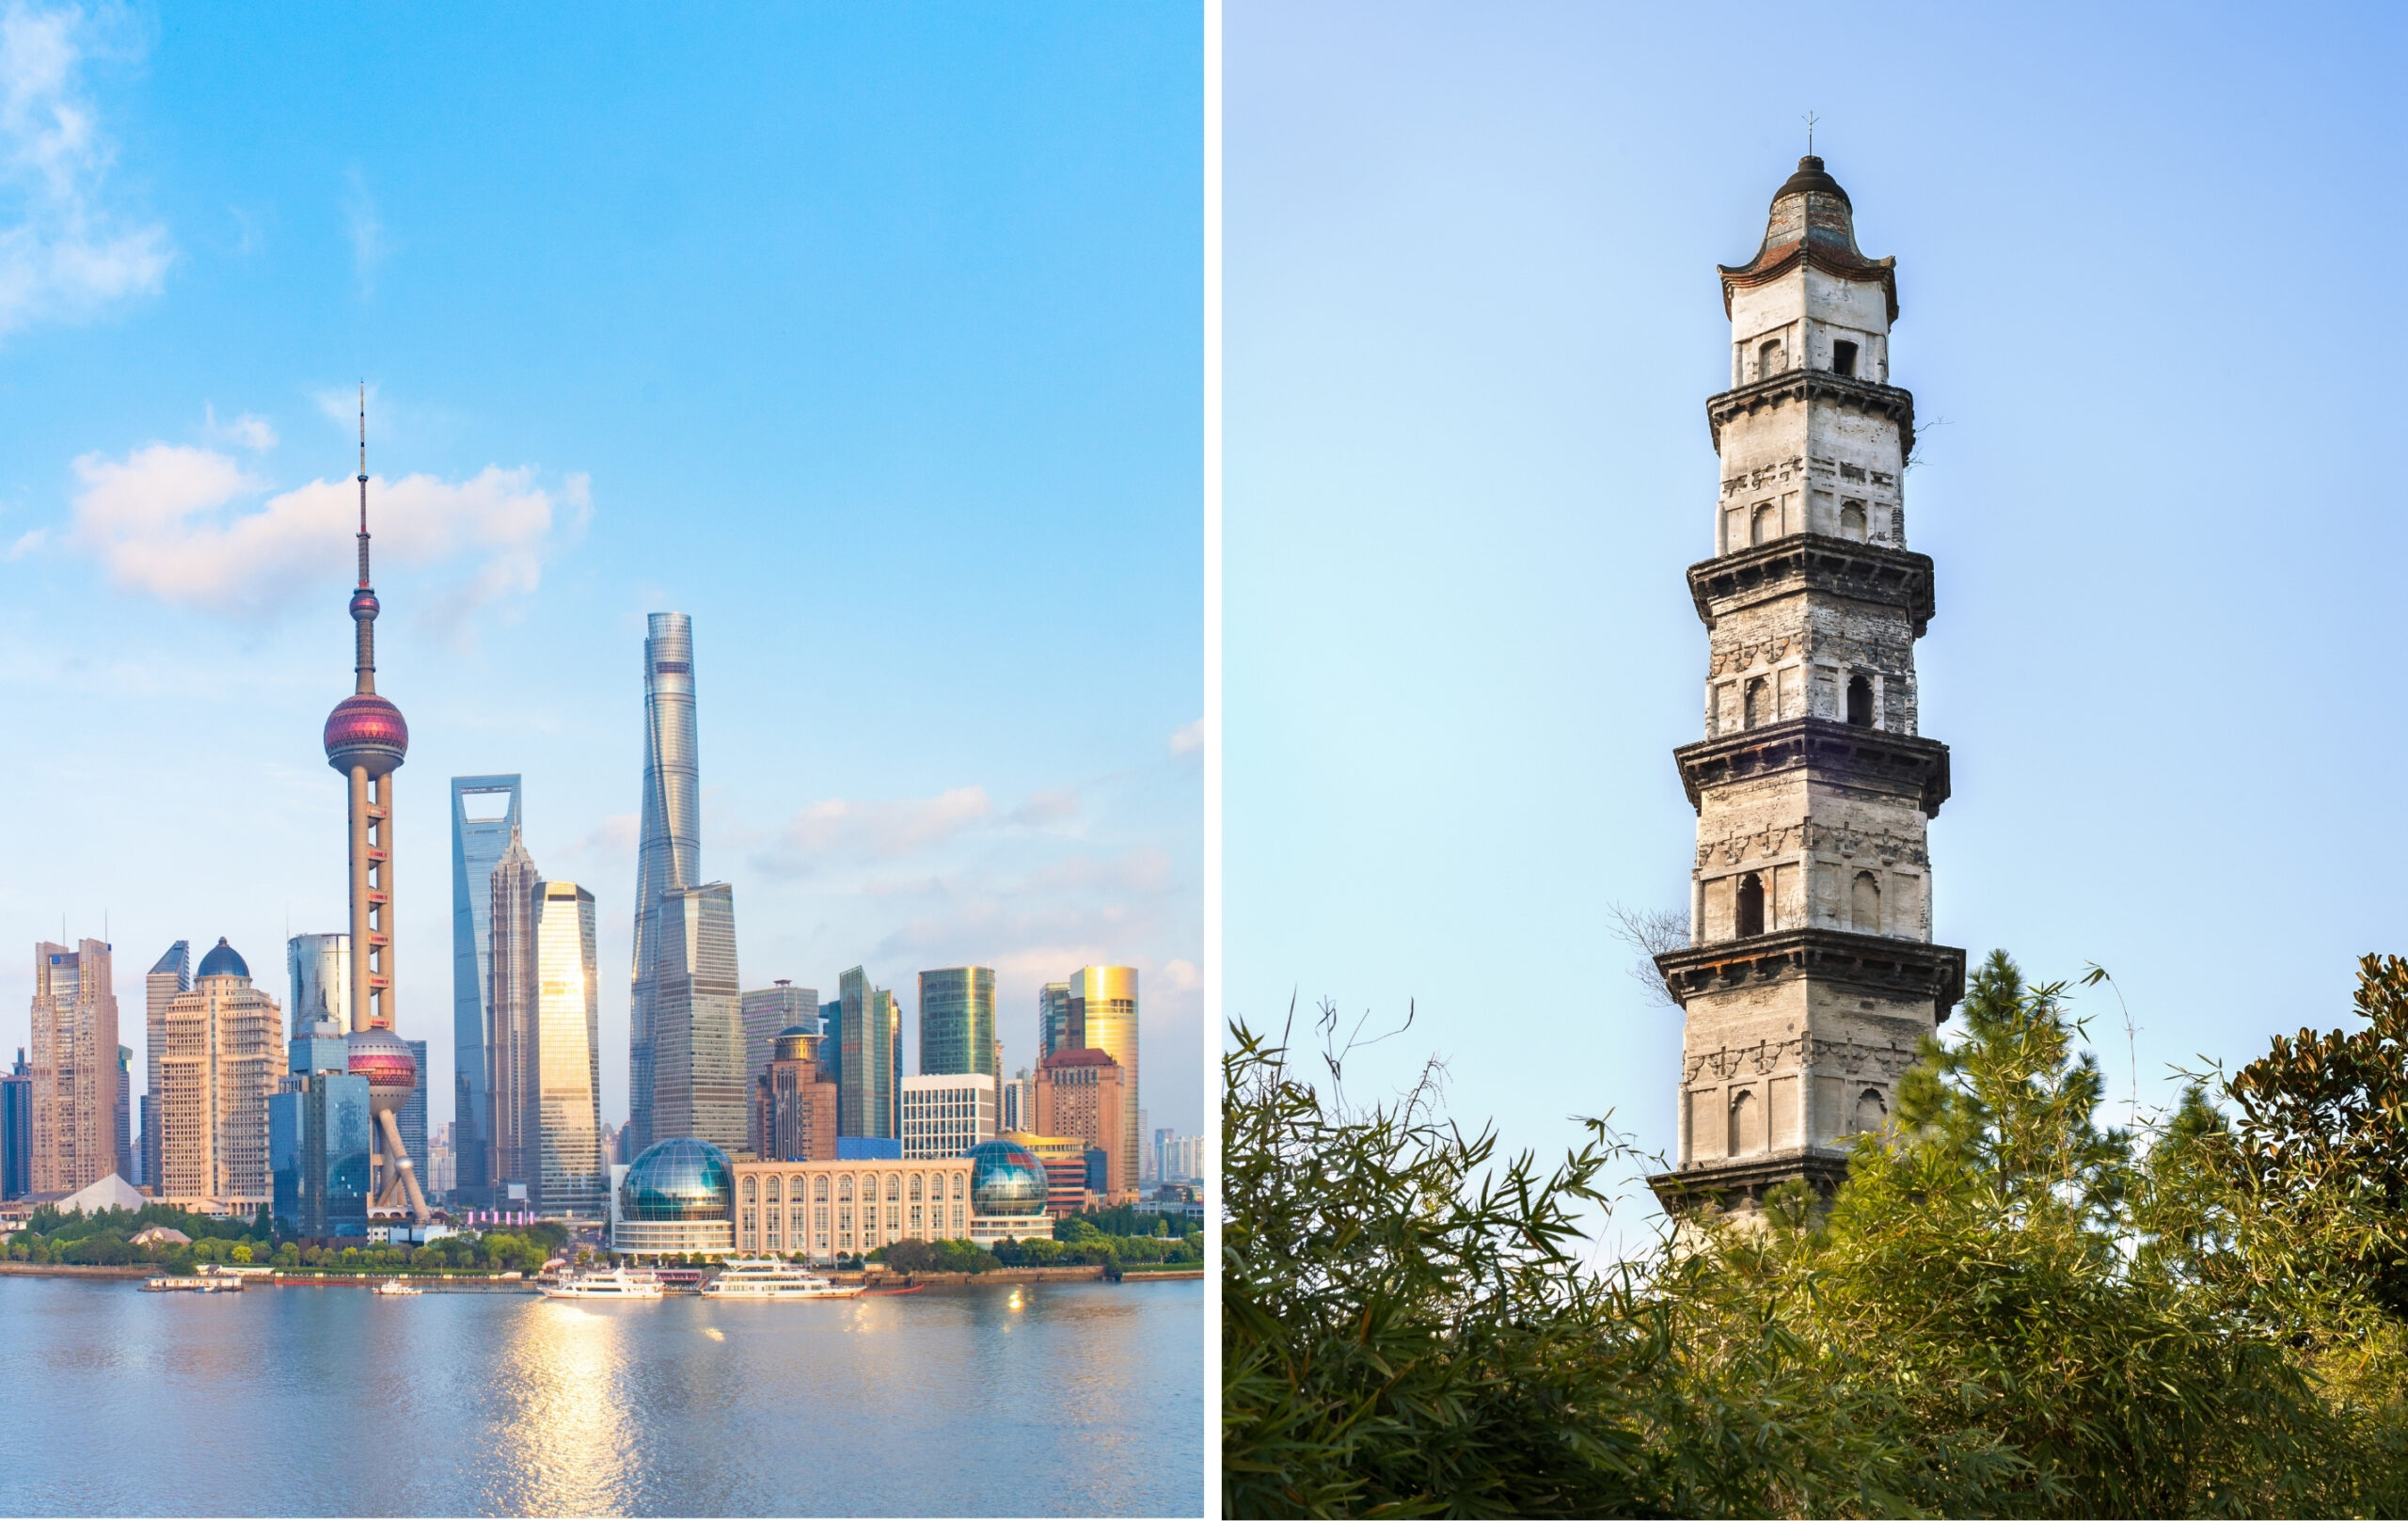 Shanghai vs Zhejiang